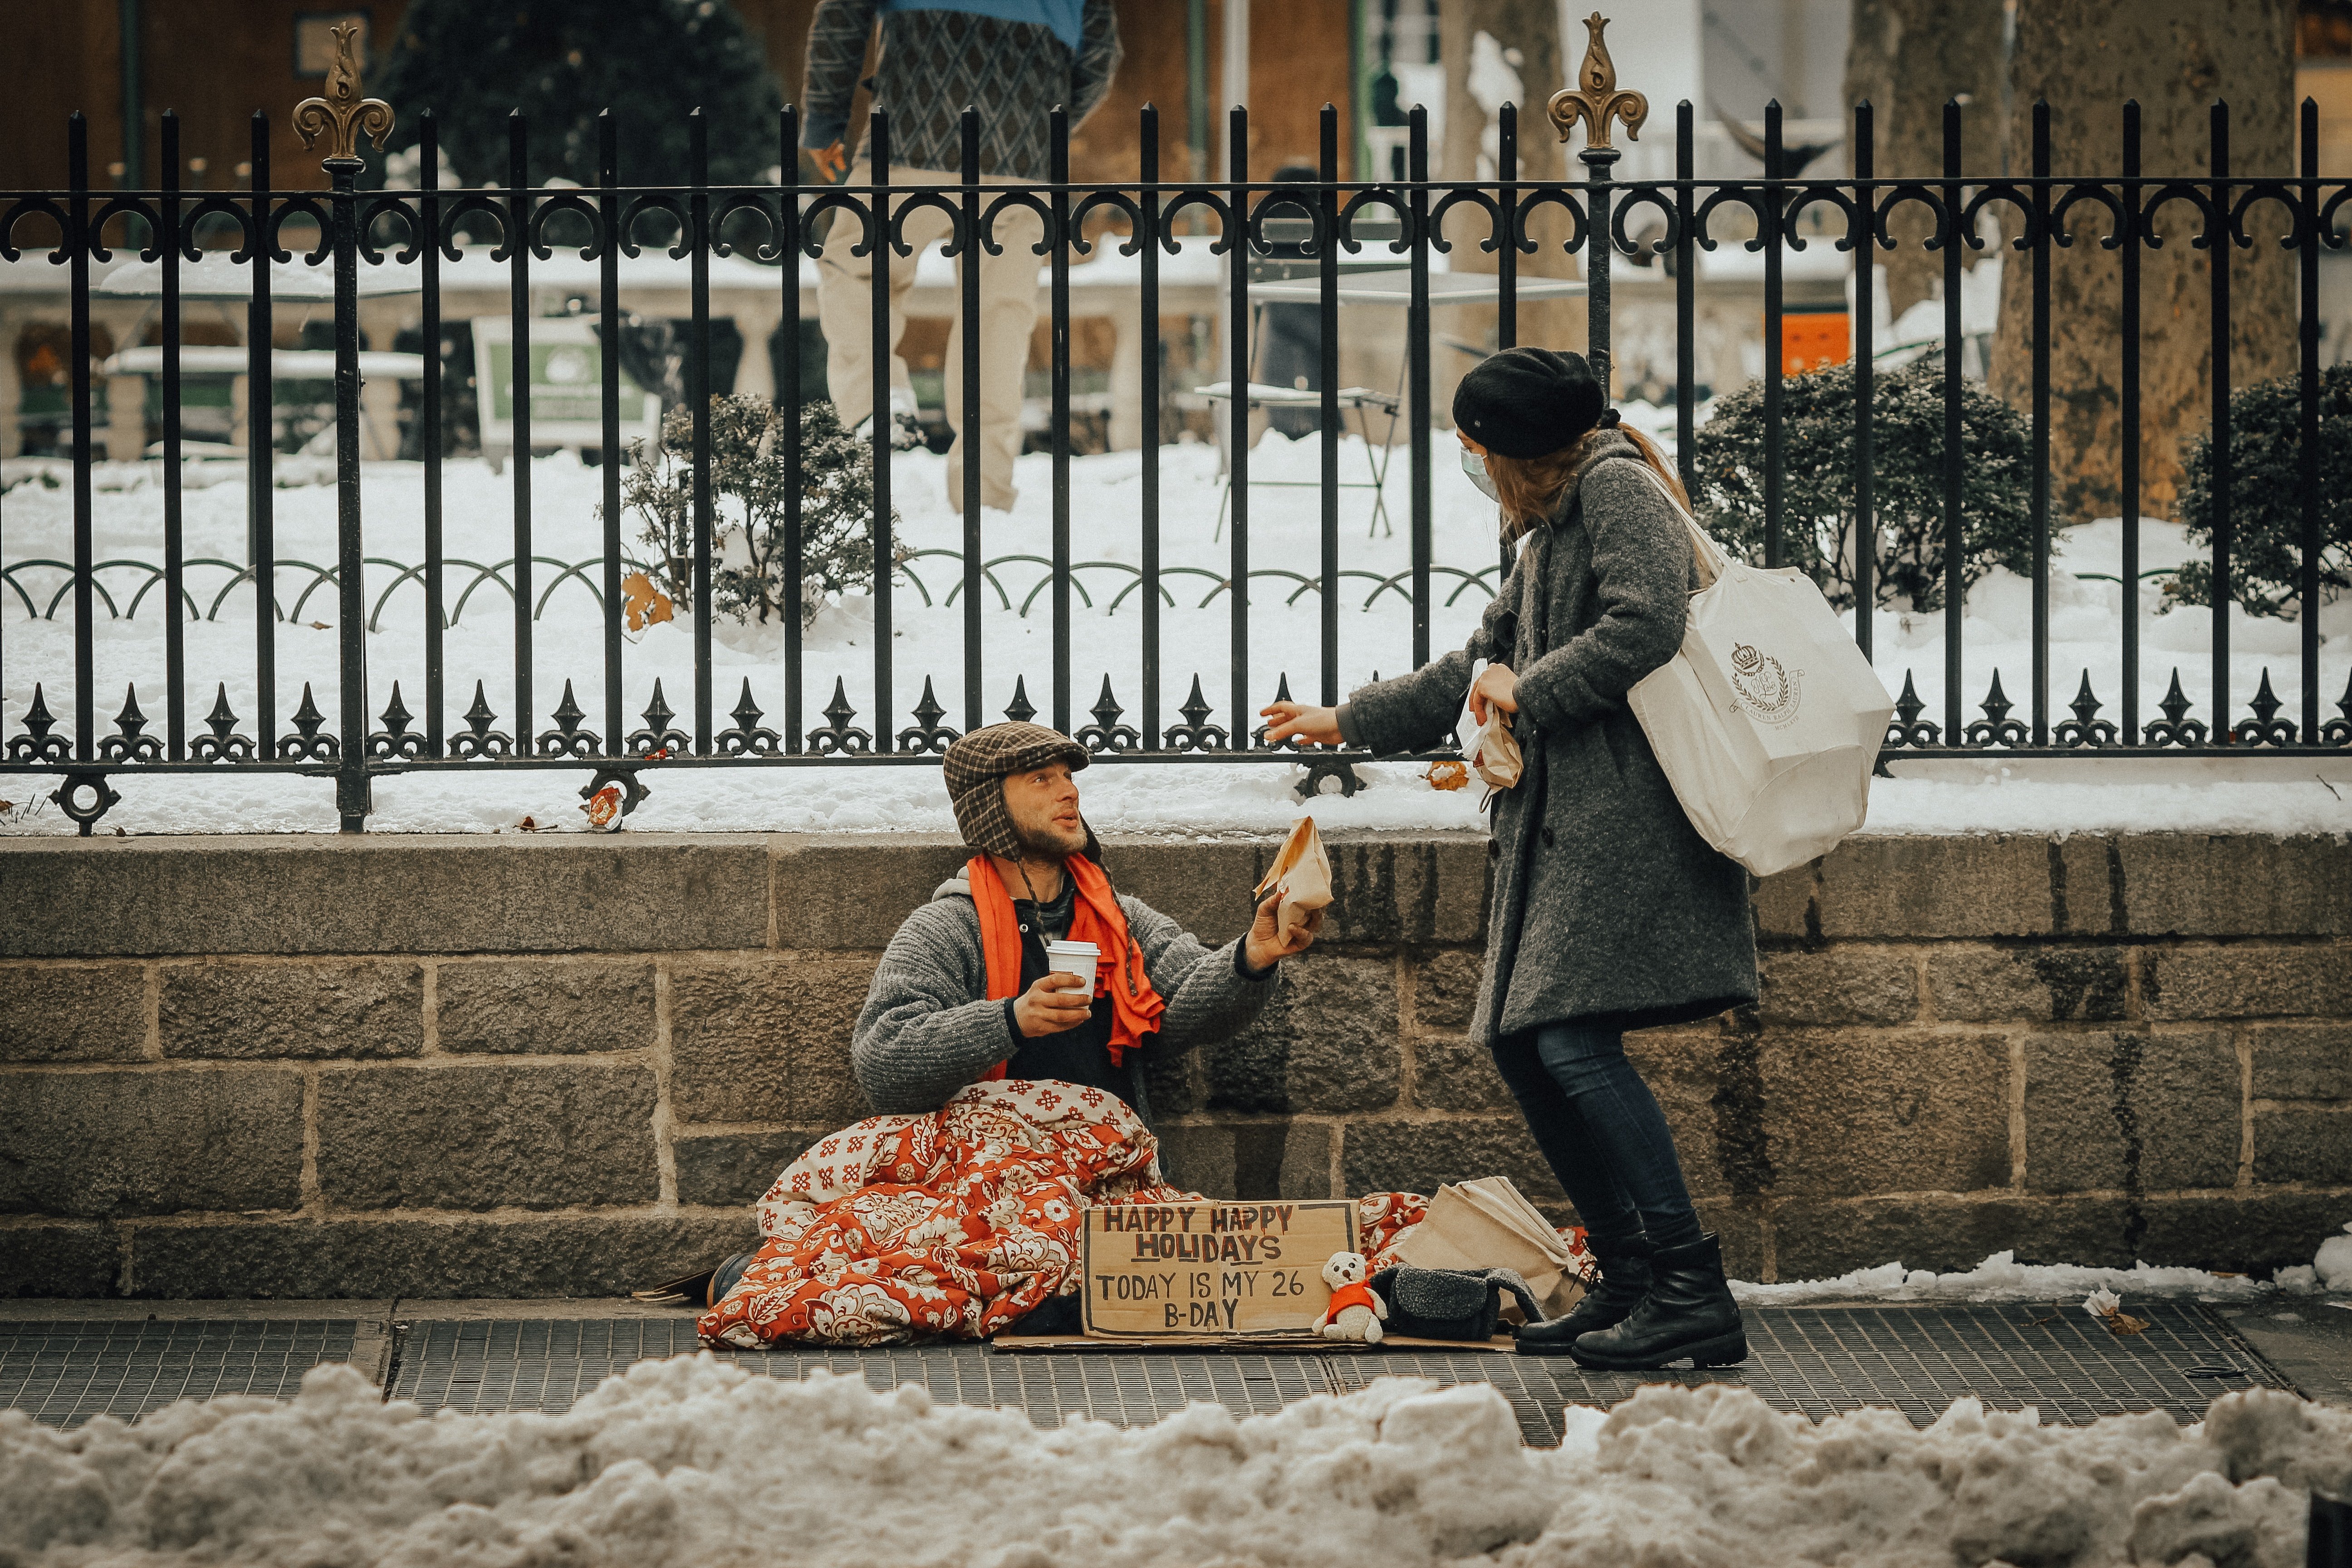 Un indigente pide comida a una señora en la calle. | Foto: Unsplash